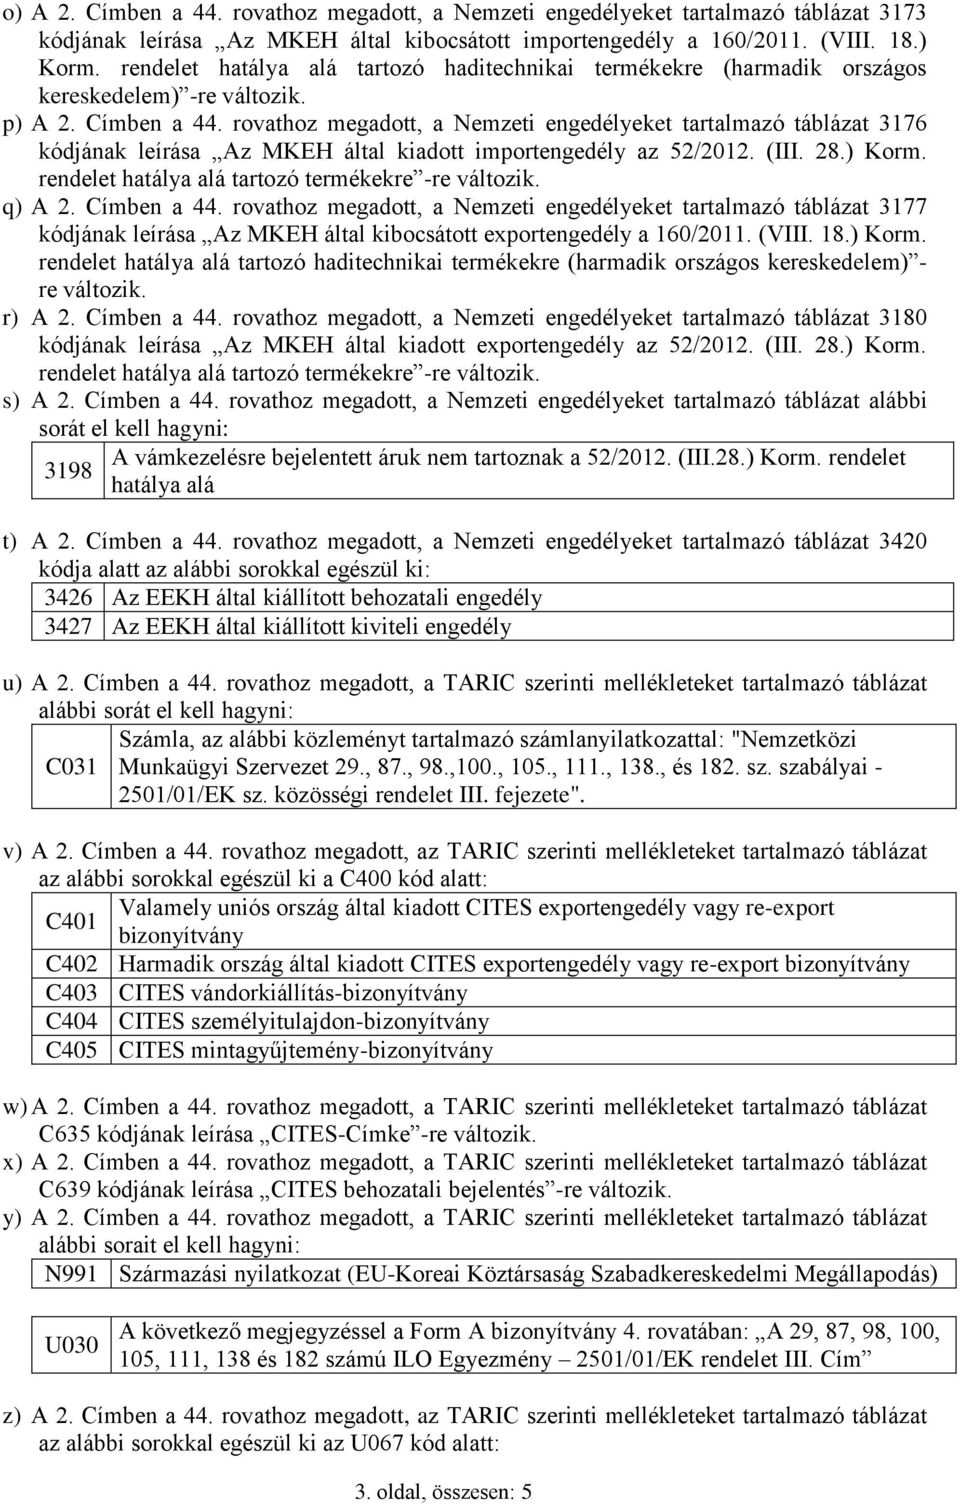 rovathoz megadott, a Nemzeti engedélyeket tartalmazó táblázat 3176 kódjának leírása Az MKEH által kiadott importengedély az 52/2012. (III. 28.) Korm.